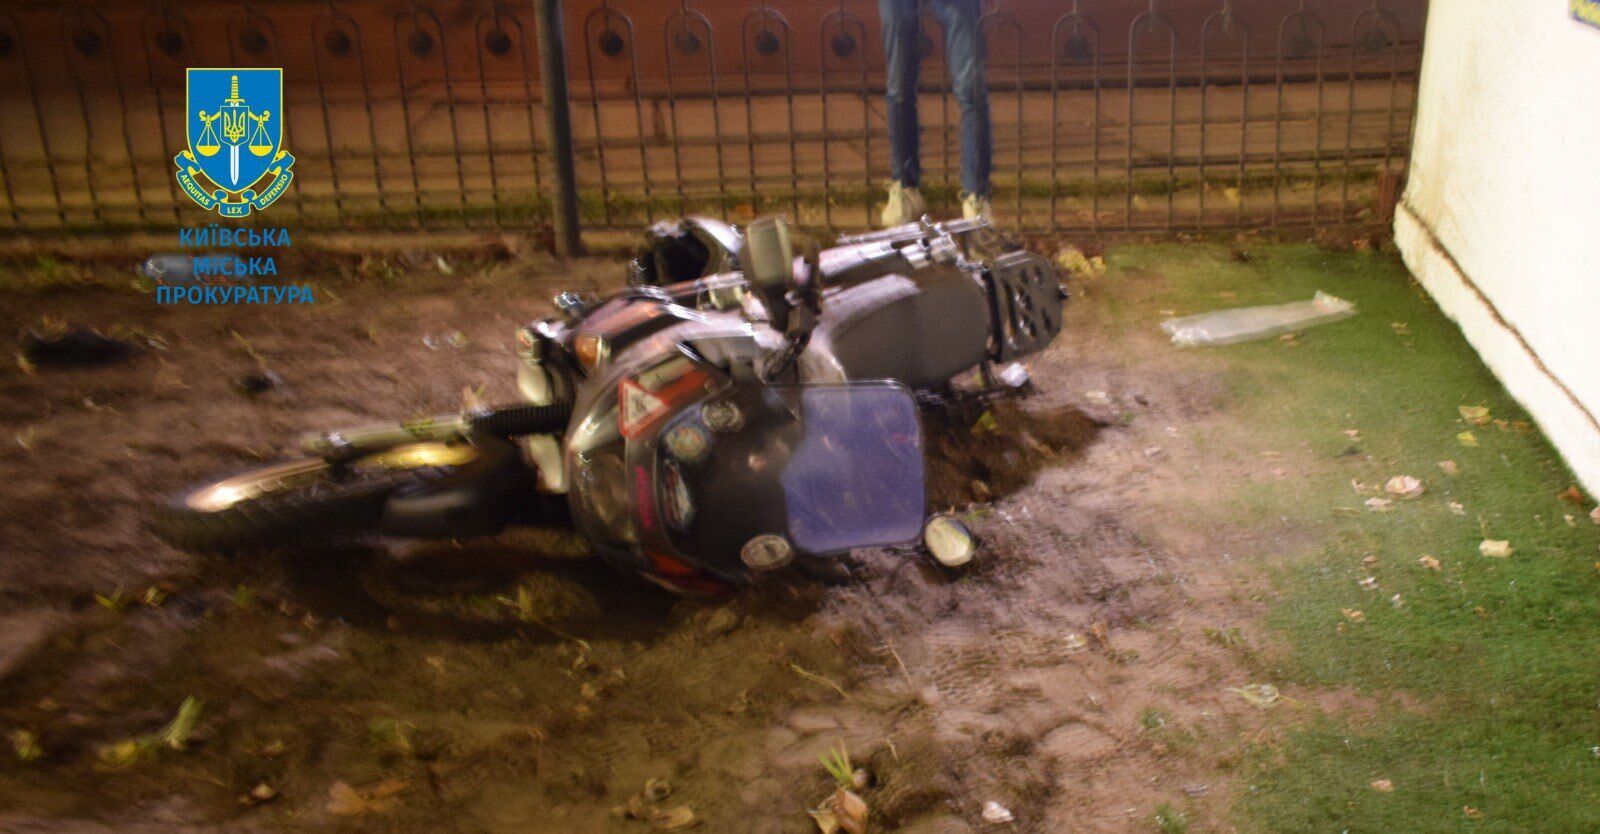 Влетів у металеву огорожу: у Києві засудили мотоцикліста, який п’яним влаштував смертельну ДТП